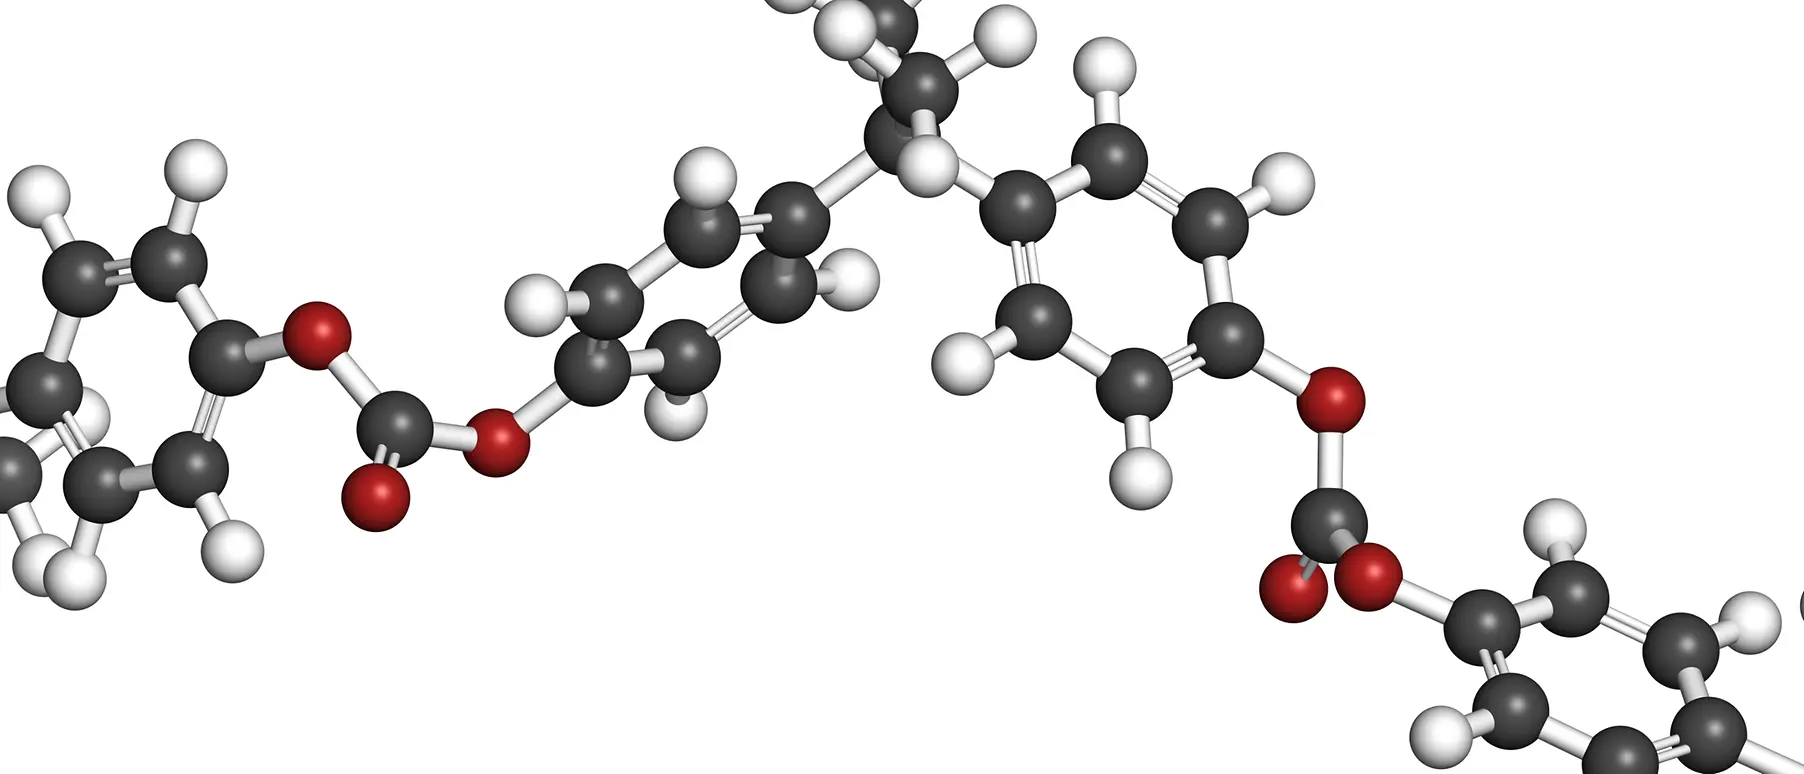 Polycarbonate molecule chain